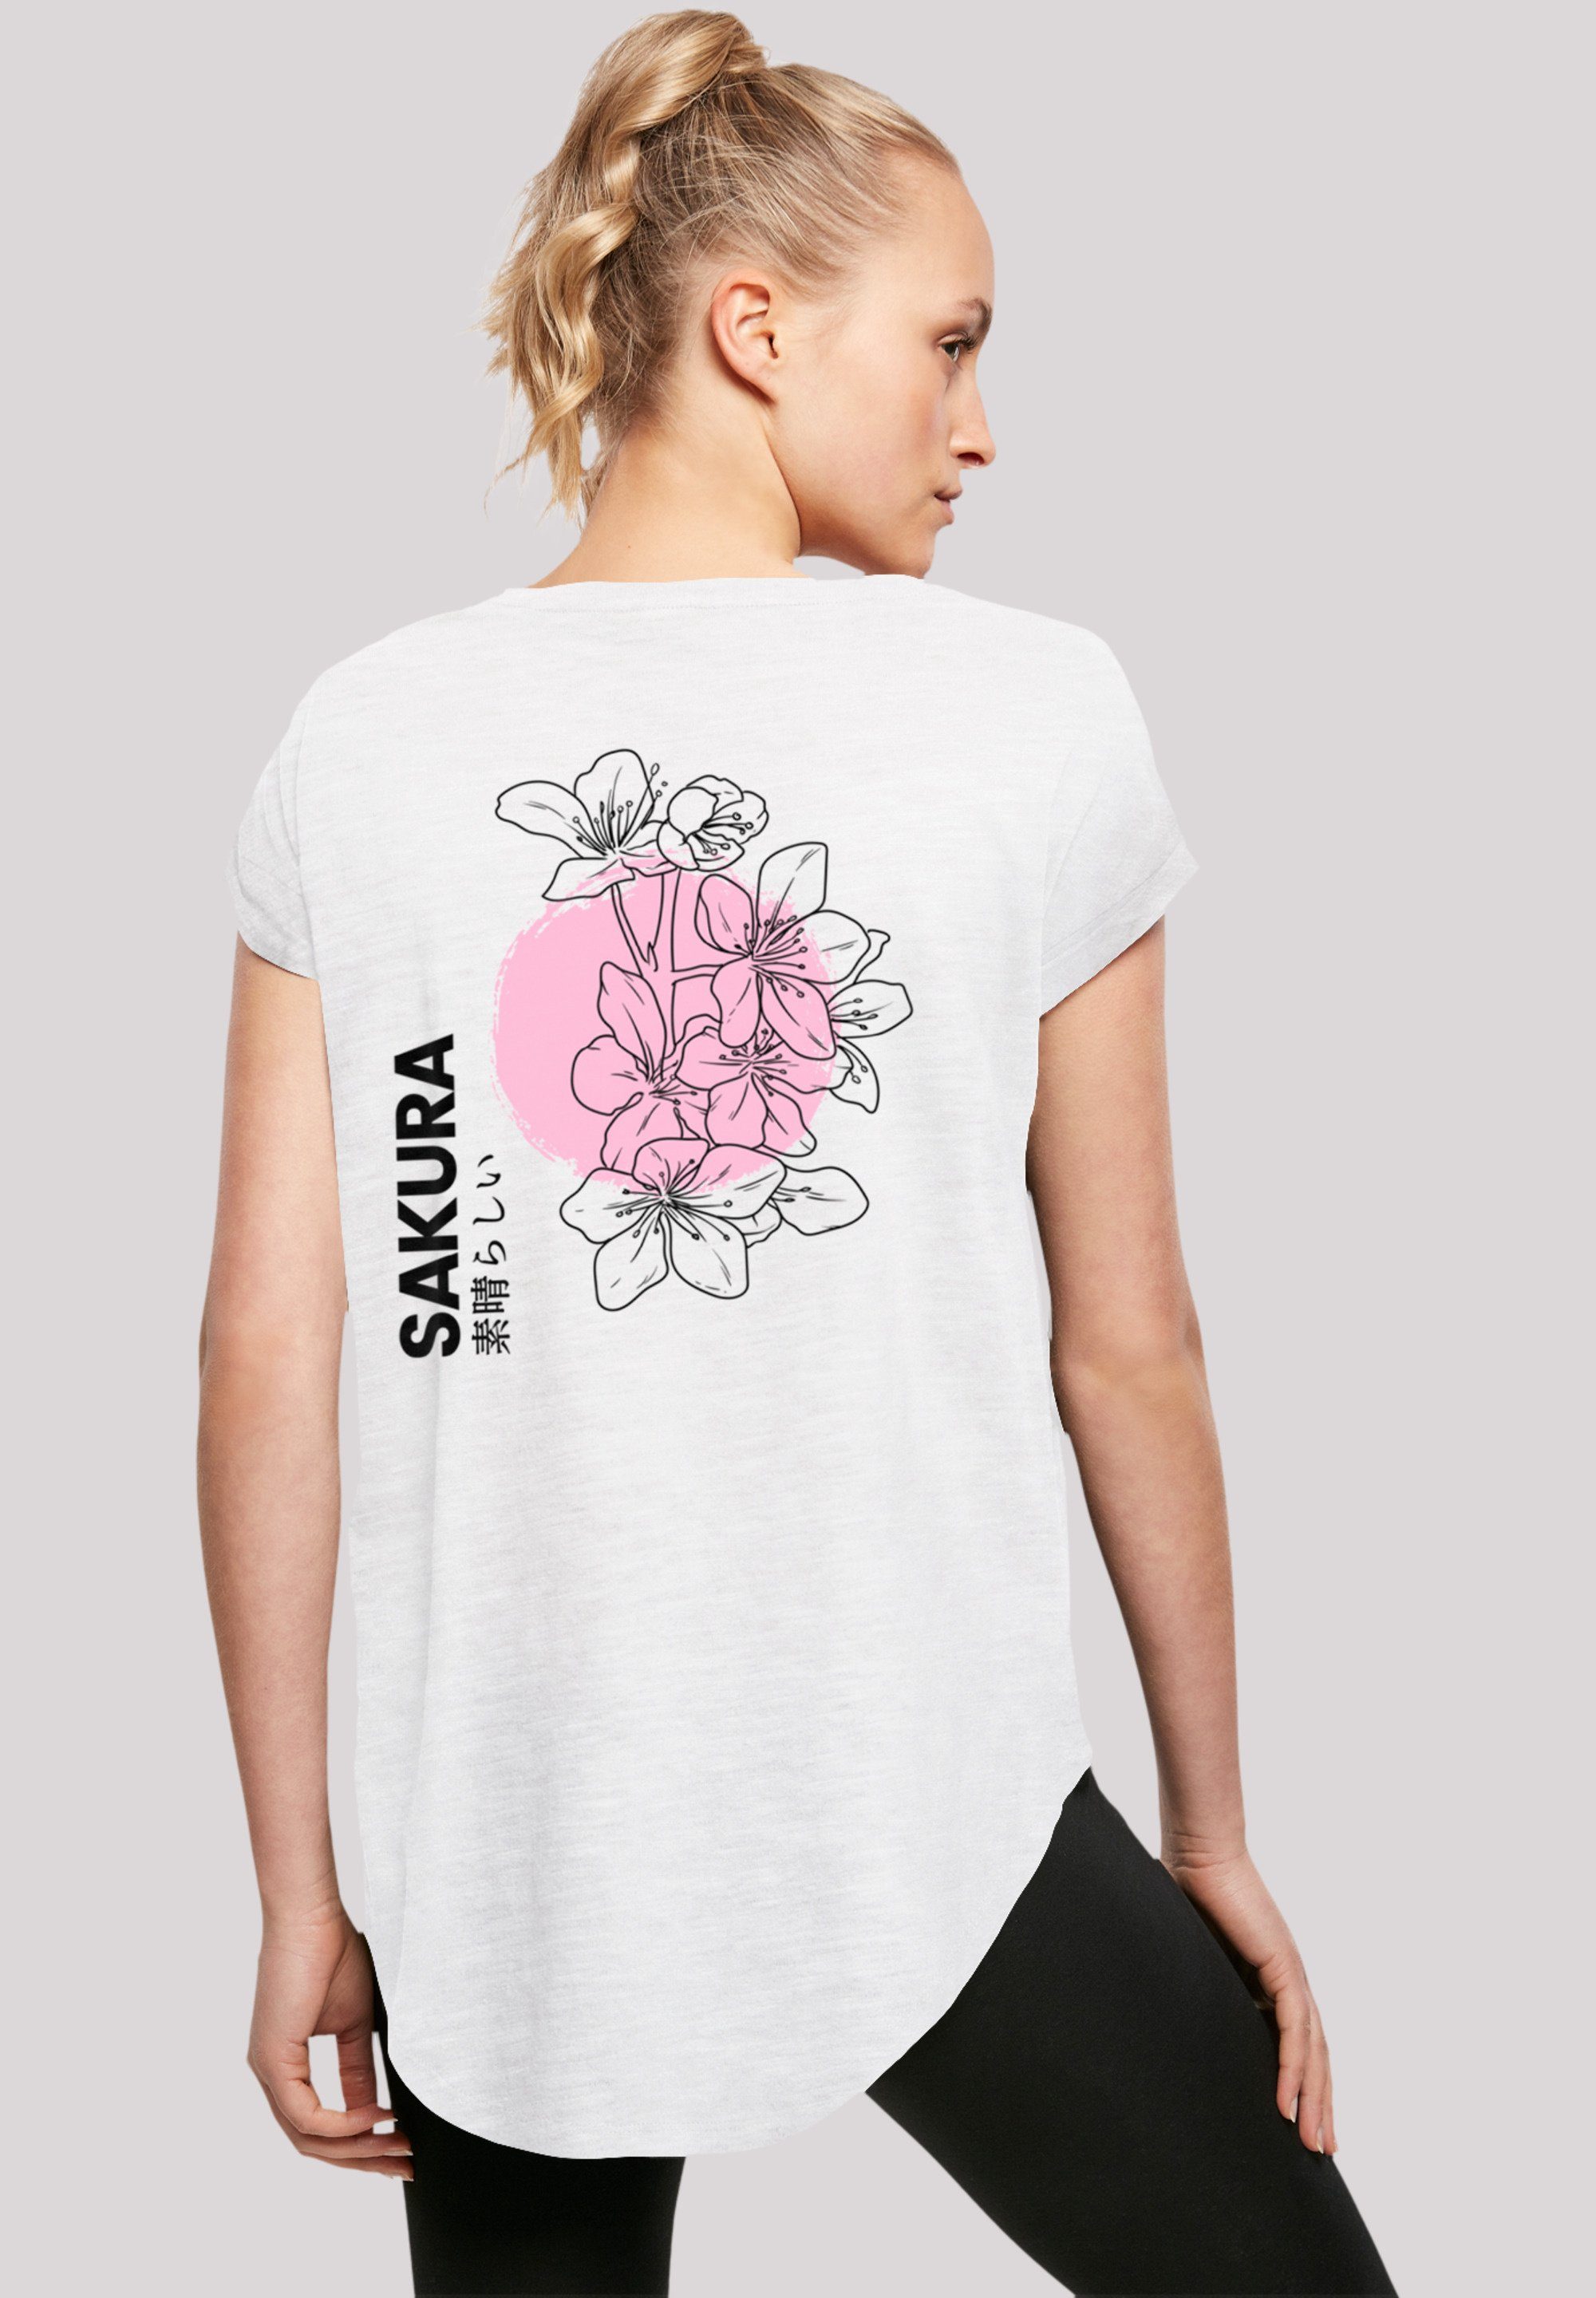 F4NT4STIC T-Shirt Sakura Japan Grafik Baumwollstoff weicher Print, hohem mit Tragekomfort Sehr